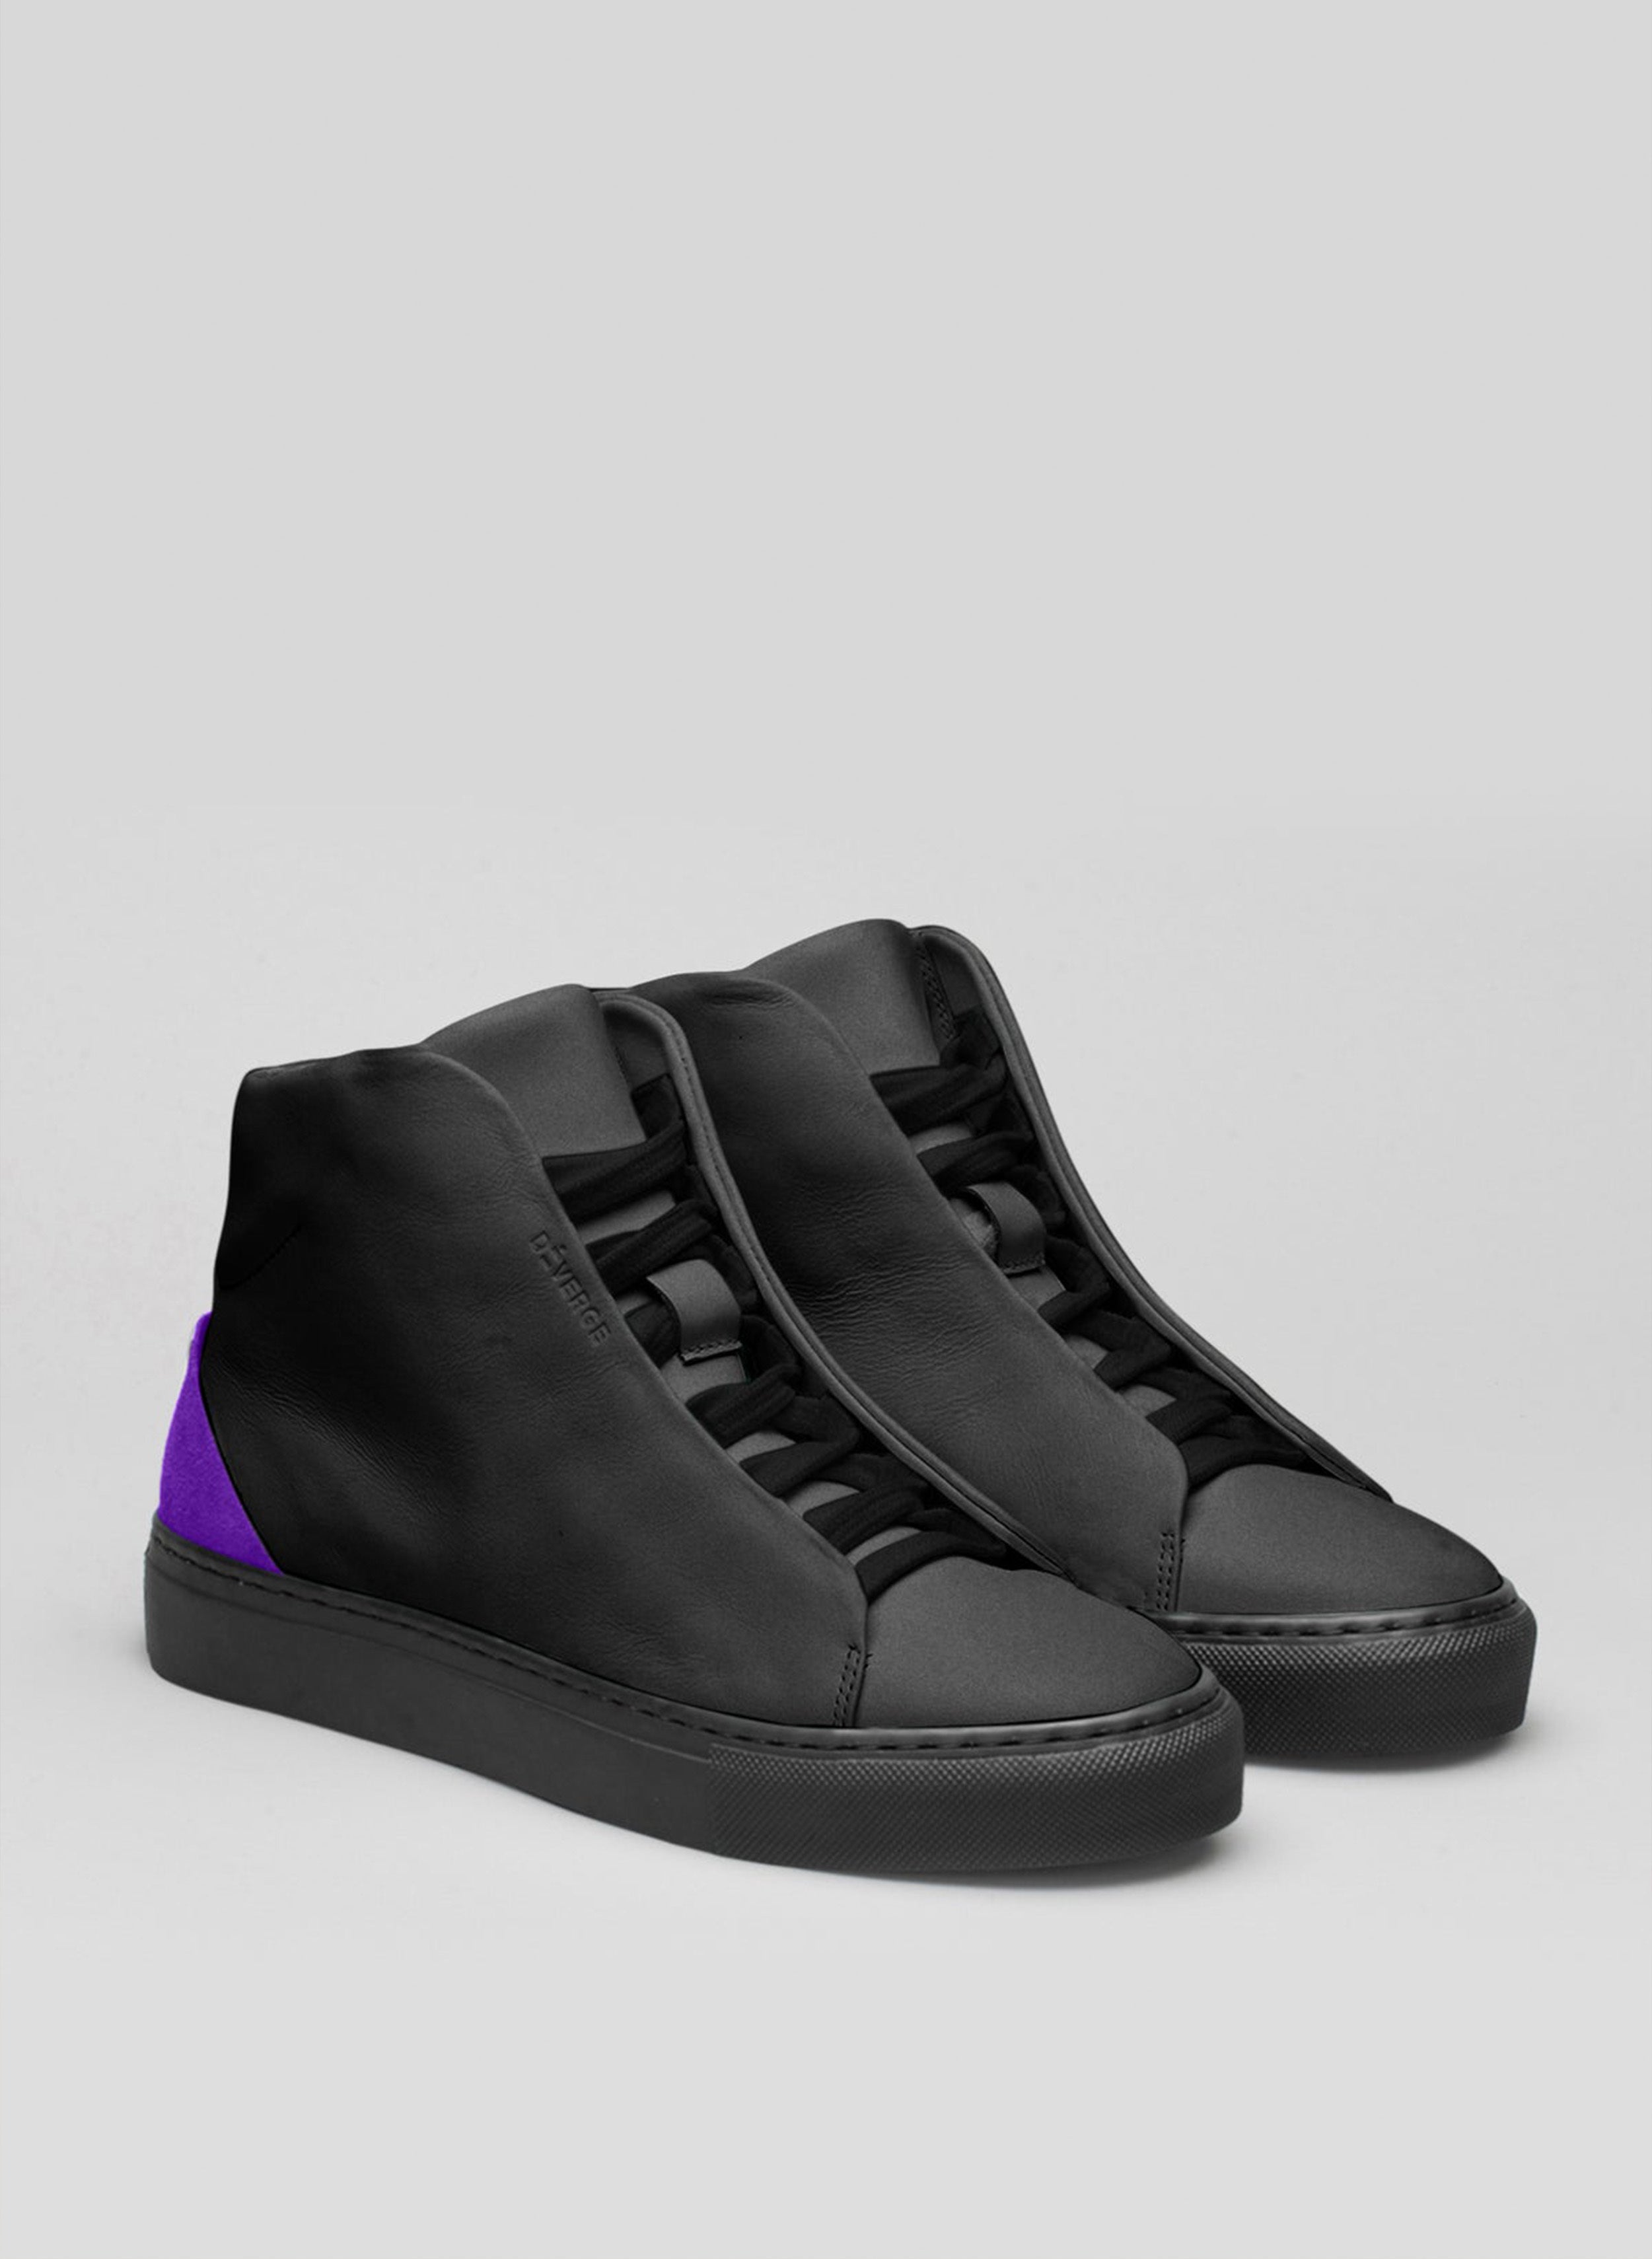 Une paire de chaussures montantes noires et violettes sneakers, qui met en valeur les chaussures personnalisées par Diverge.